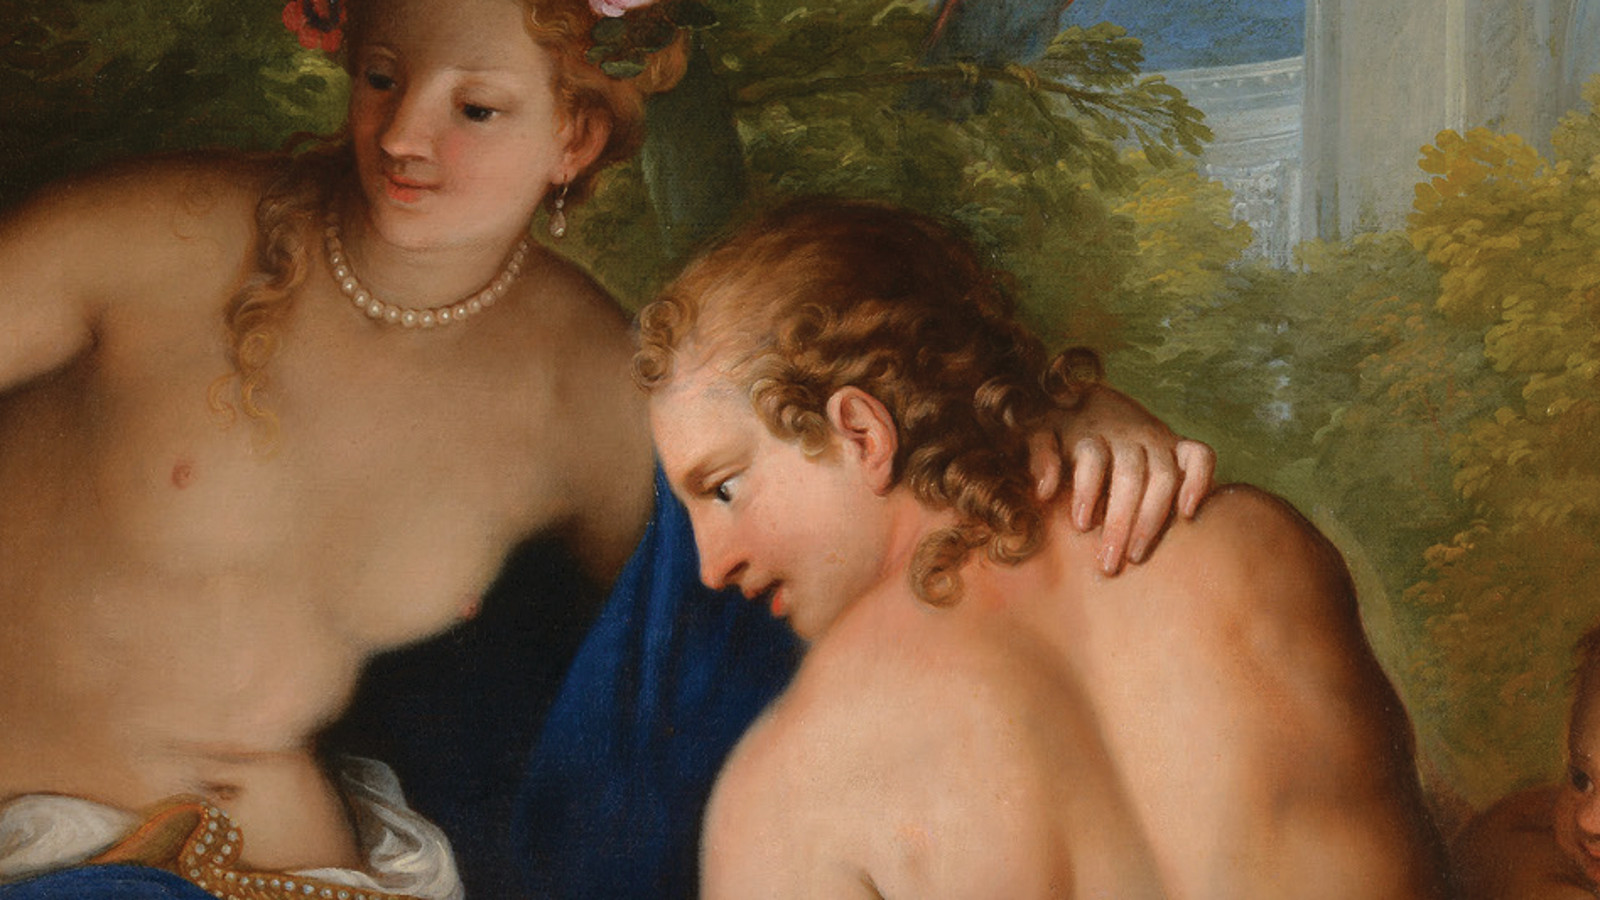 Kuvassa on taideteos, jossa on melko alaston nainen kurottamassa selin olevaa alaston selkäistä miestä.